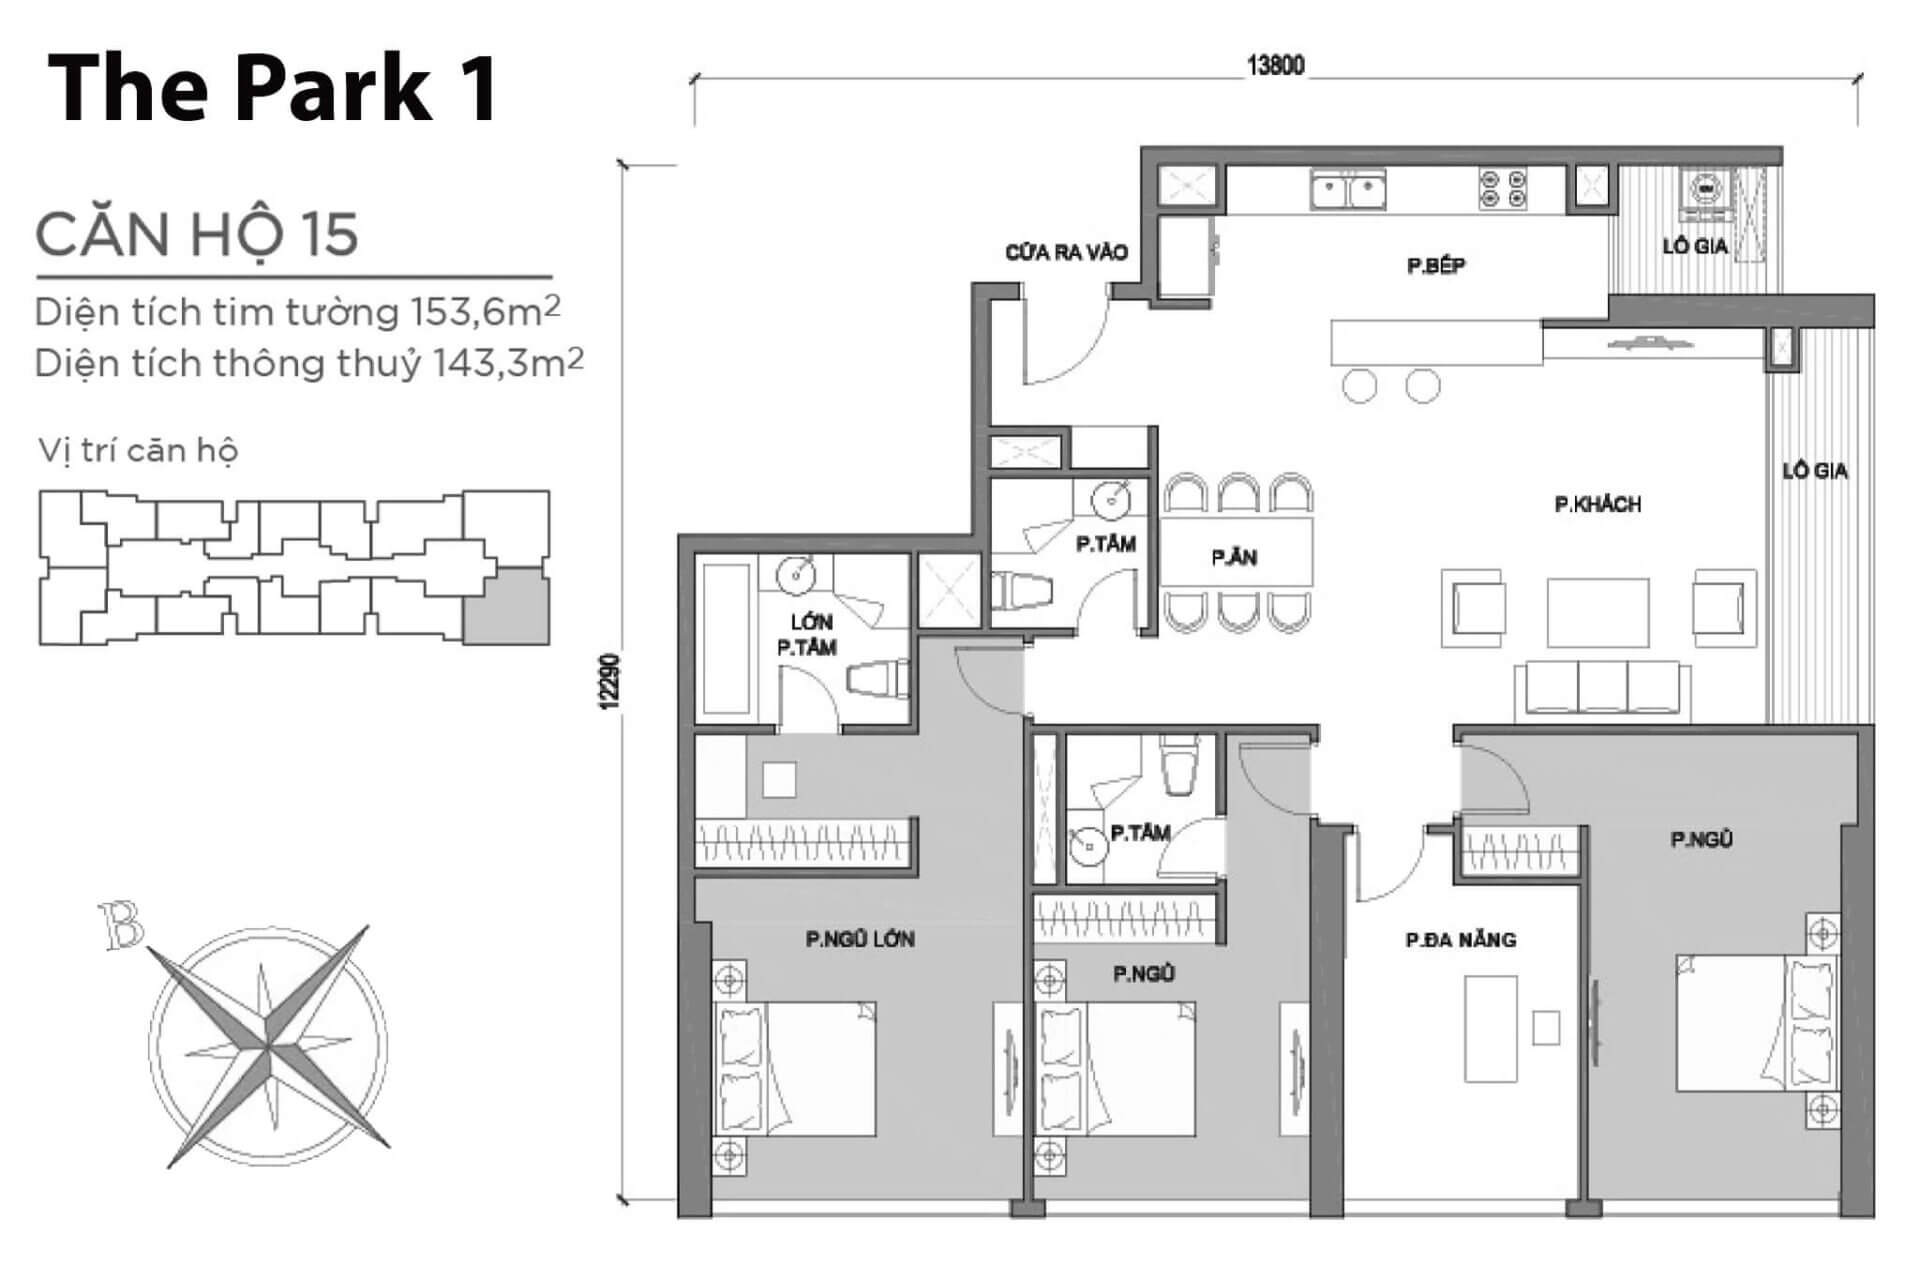 mặt bằng layout căn hộ số 15 Park 1 Vinhomes Central Park